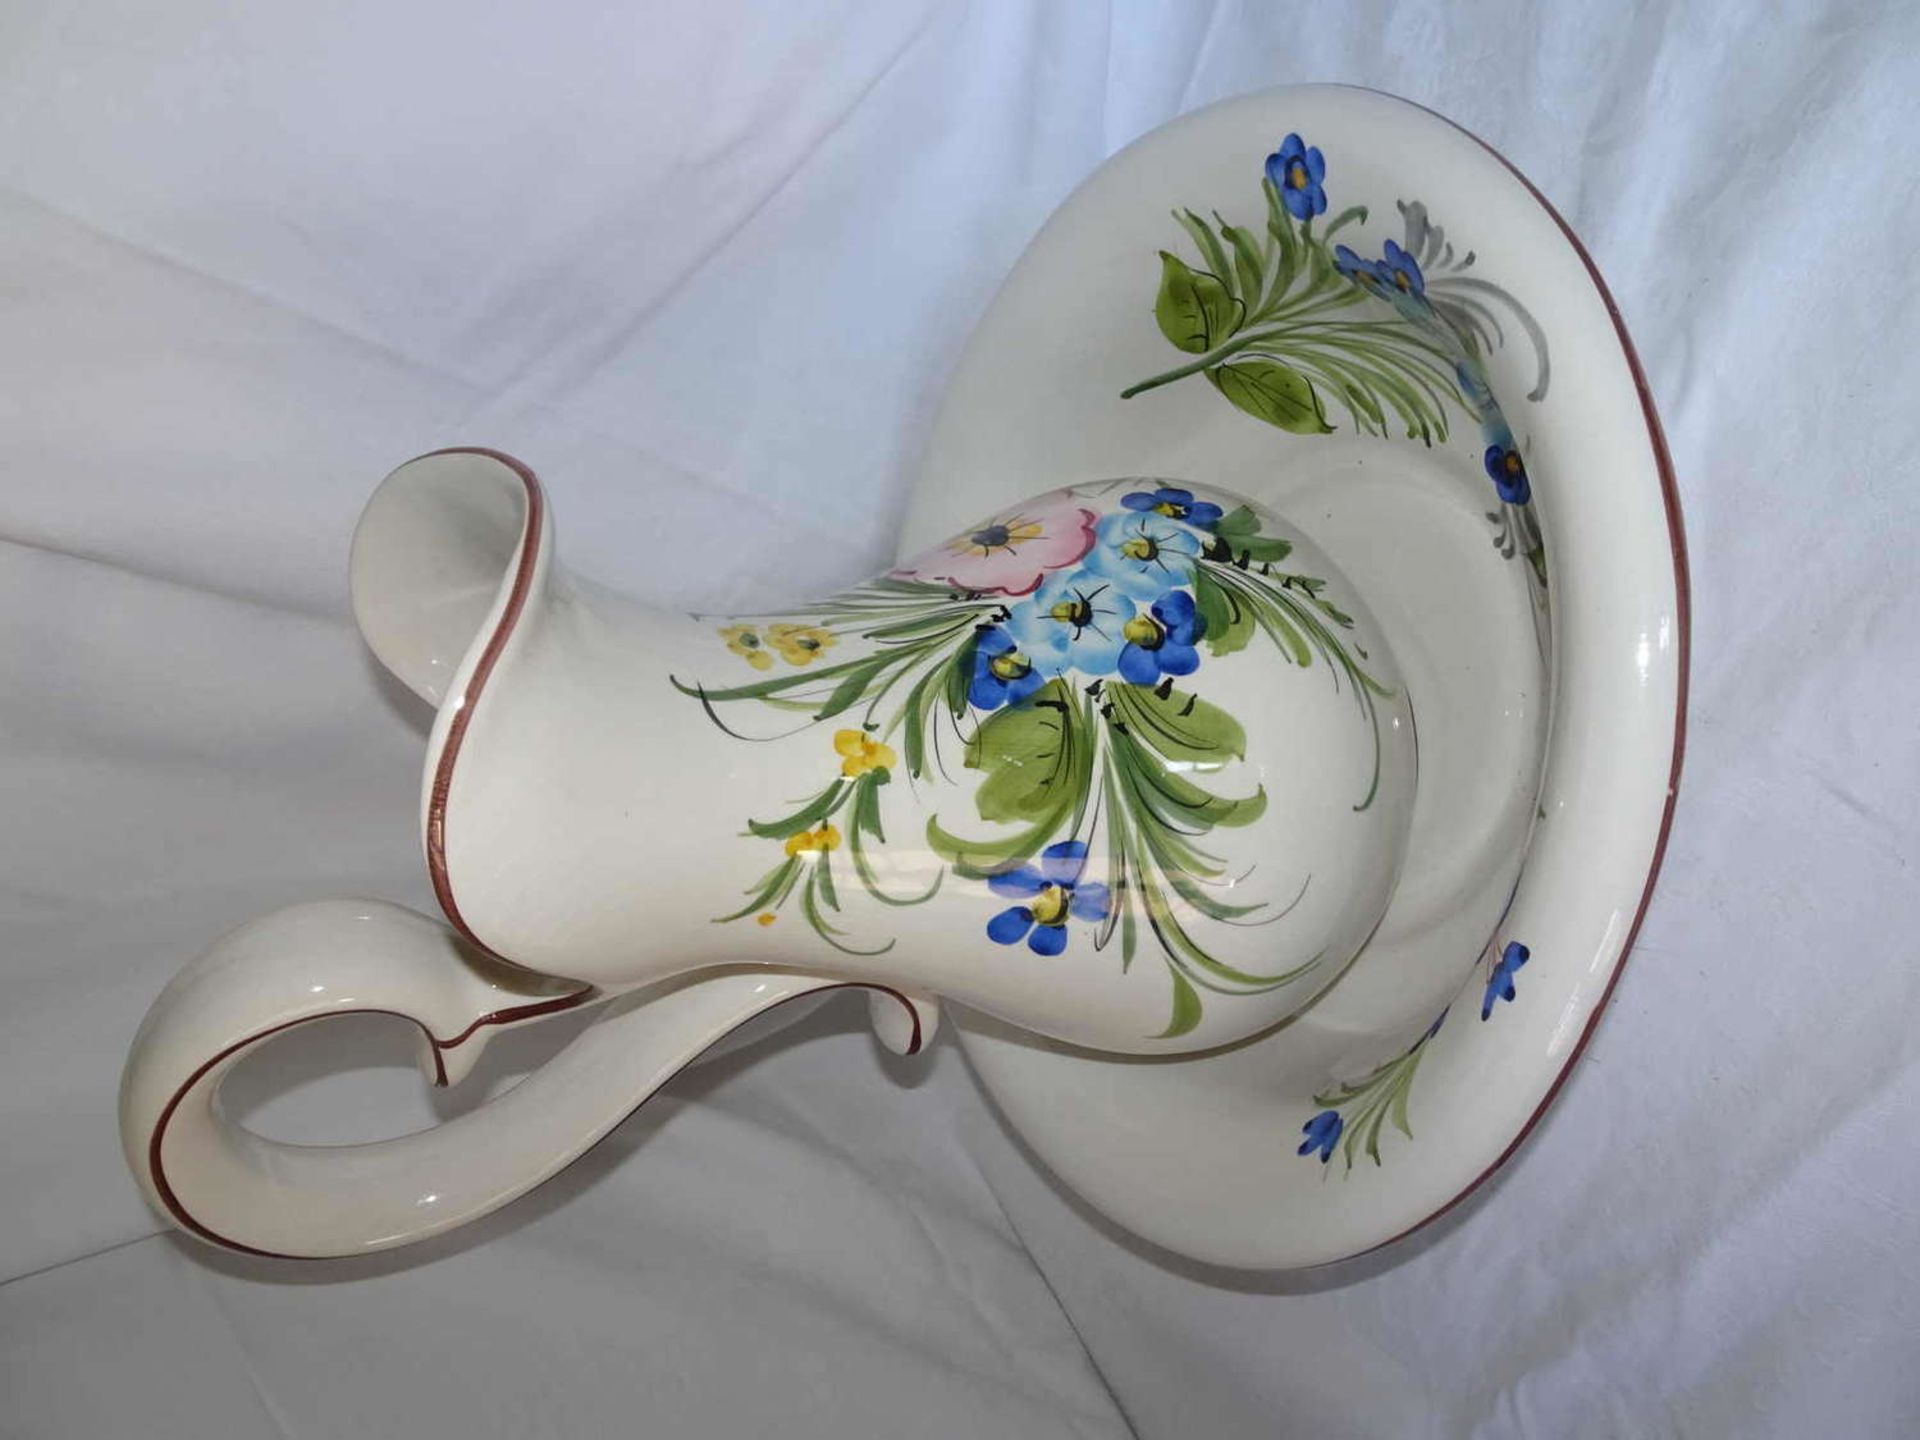 Ceramic wash basin, hand-painted. Modern.Keramik Waschlavoir, handbemalt. Neuzeitlich.